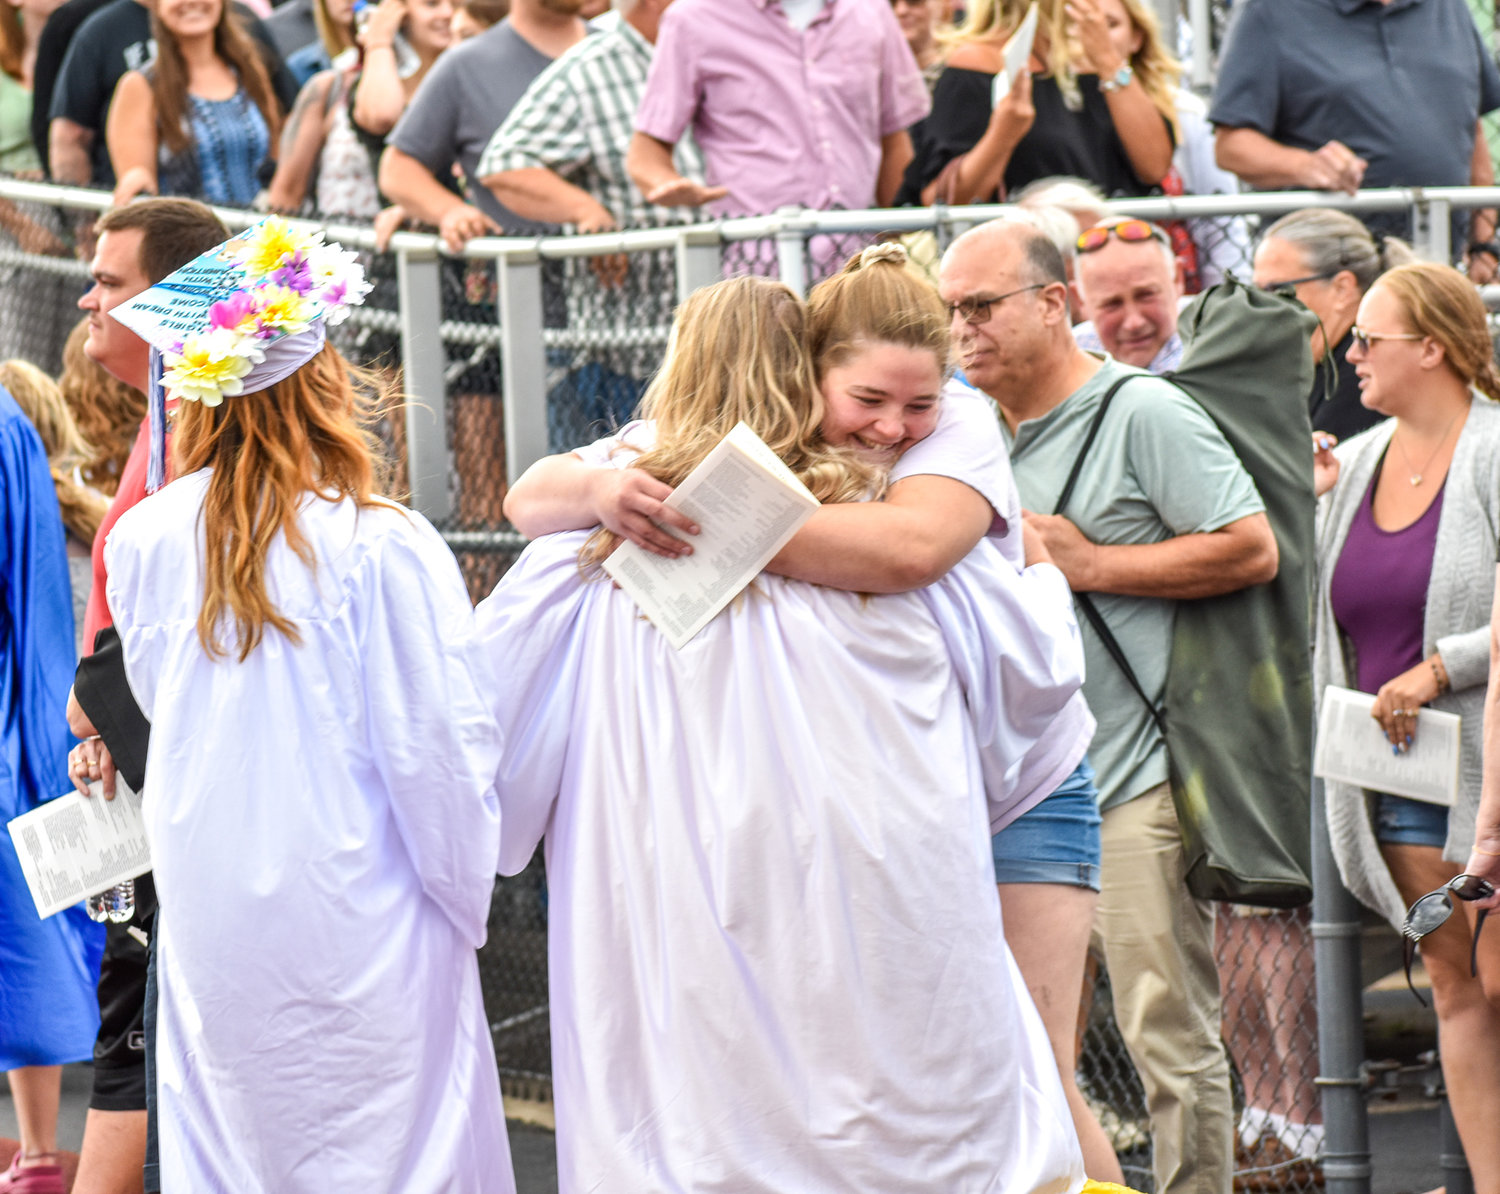 A member of the Camden High School Class of 2022 shares an embrace after graduation.